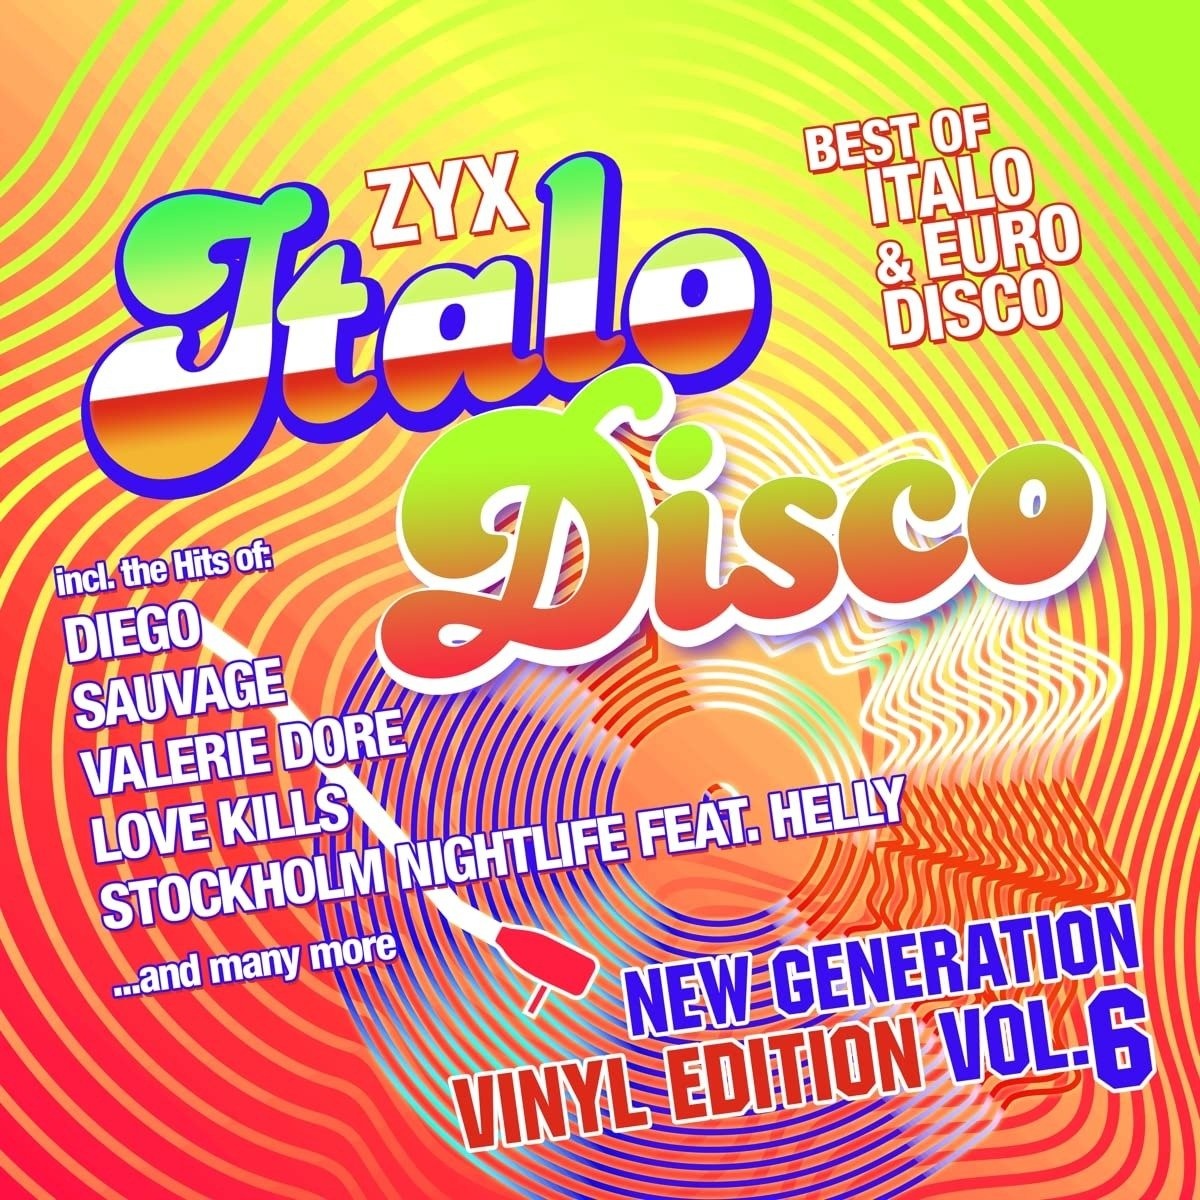 Итало диско. Italo Disco New Generation vol5 обложки. Electric City Cowboys ZYX Italo Disco New Generation Vol. 22. Cliff Wedge feat. Vasso - Angel Eyes. Zyx italo disco new generation 24